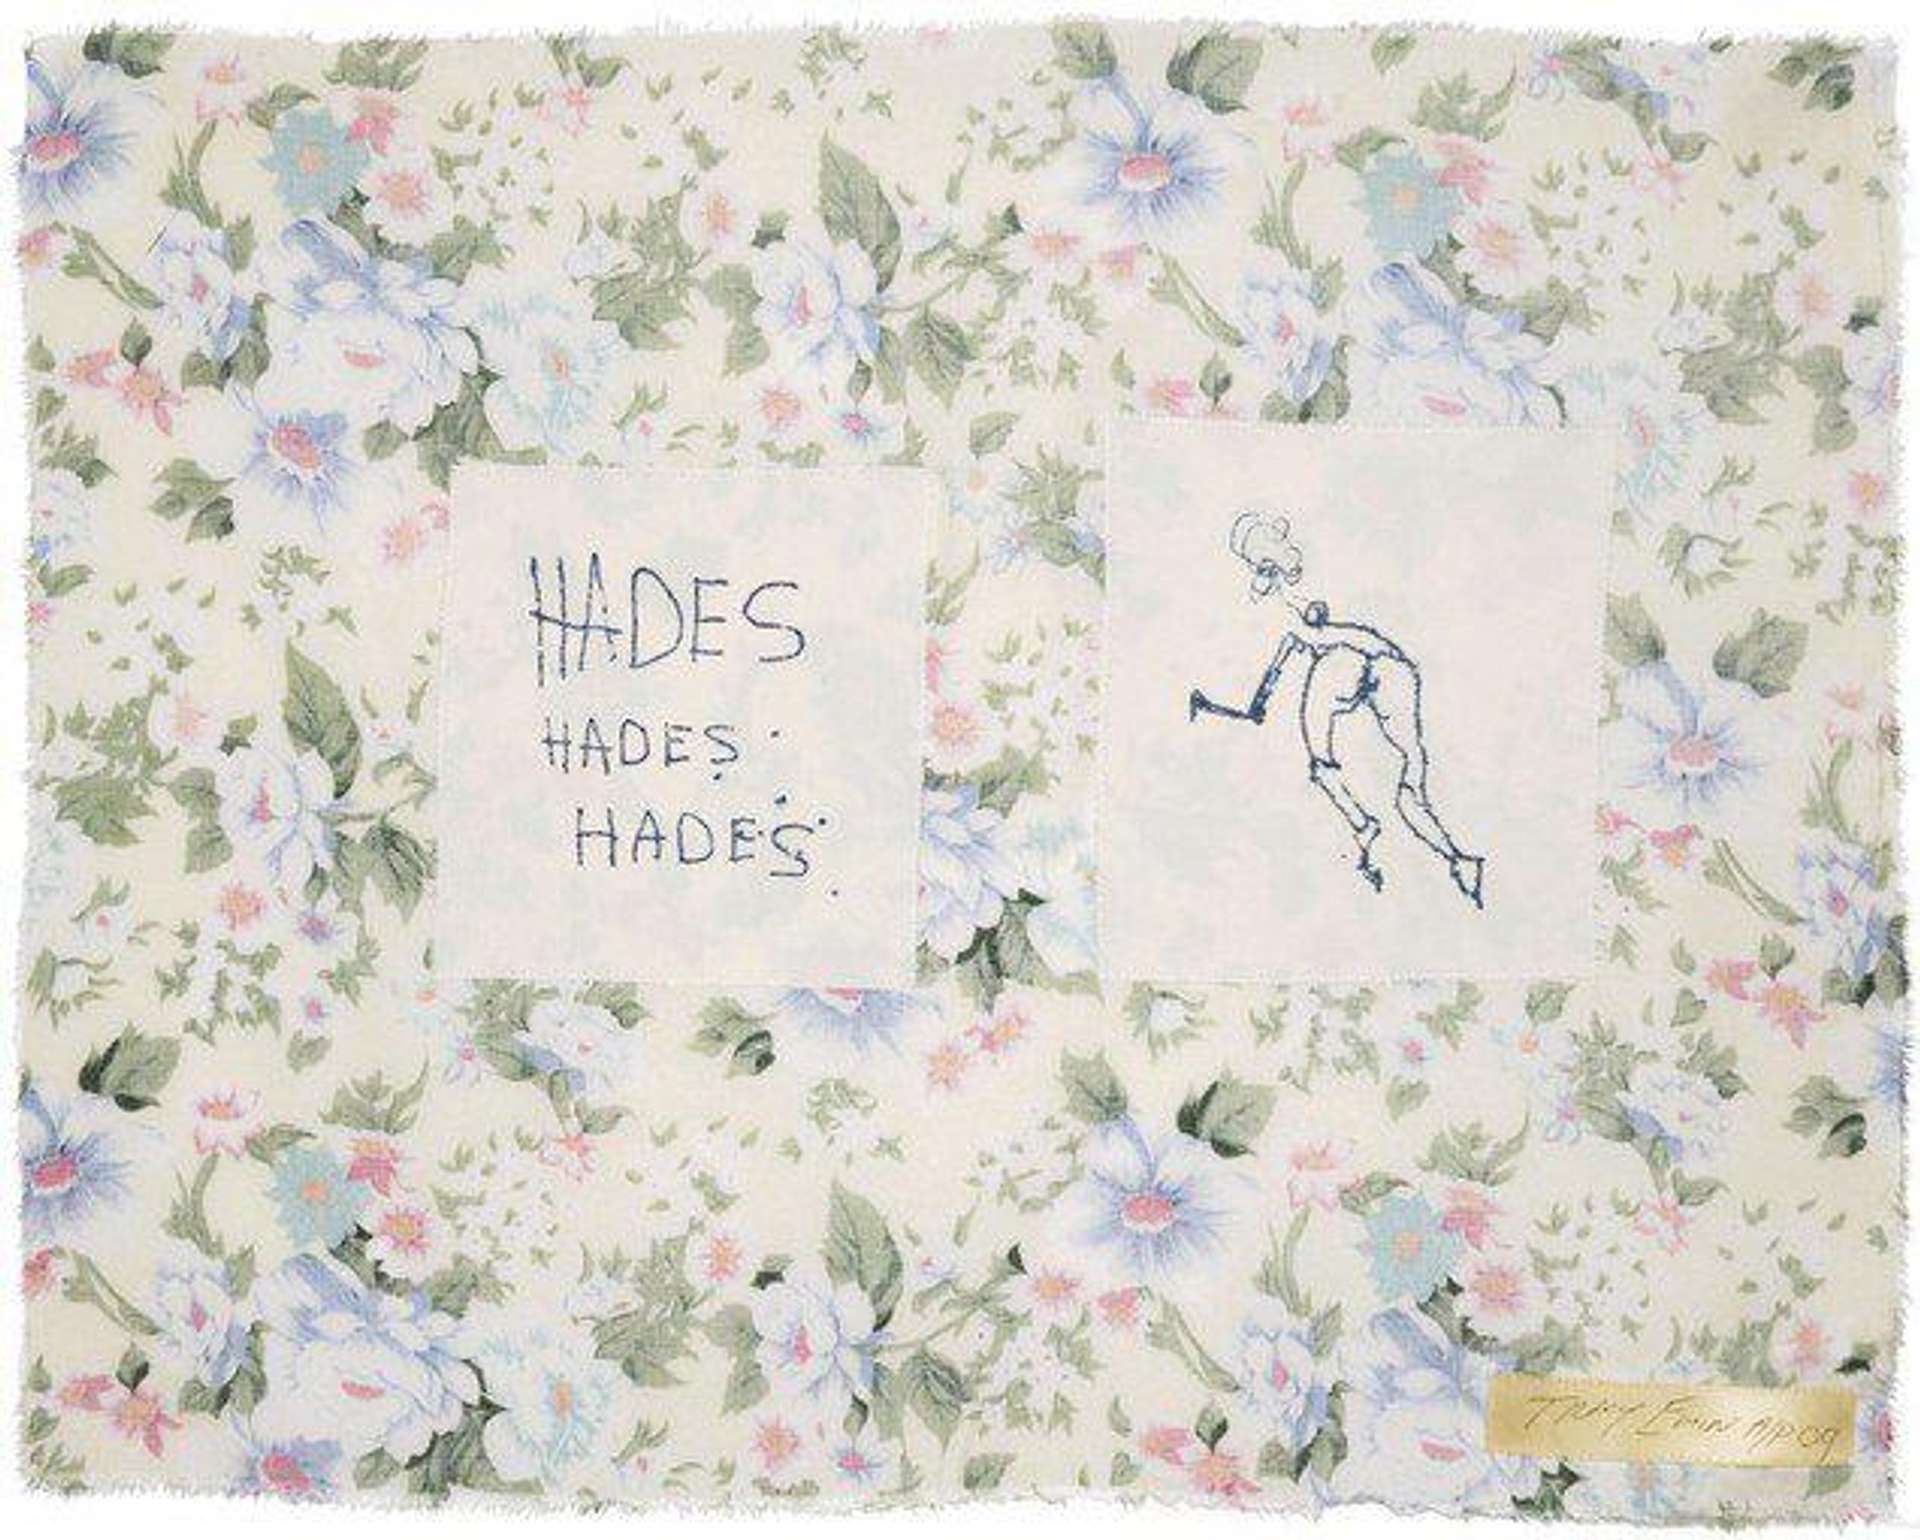 Tracey Emin: Hades, Hades, Hades - Signed Print